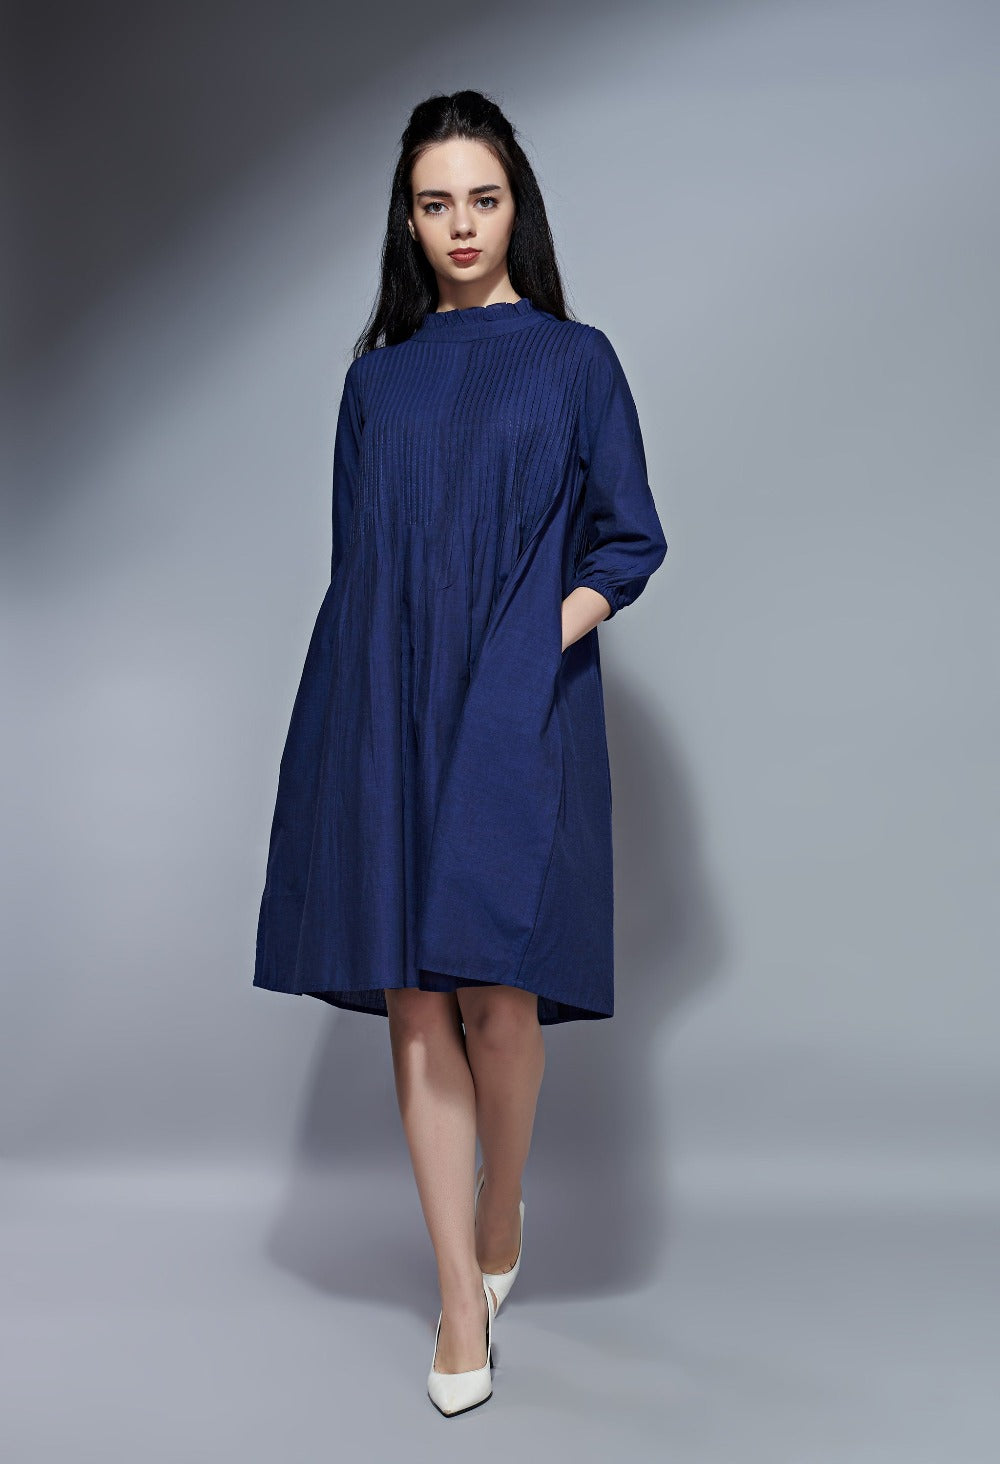 Pintuck dress – Indigo Blue